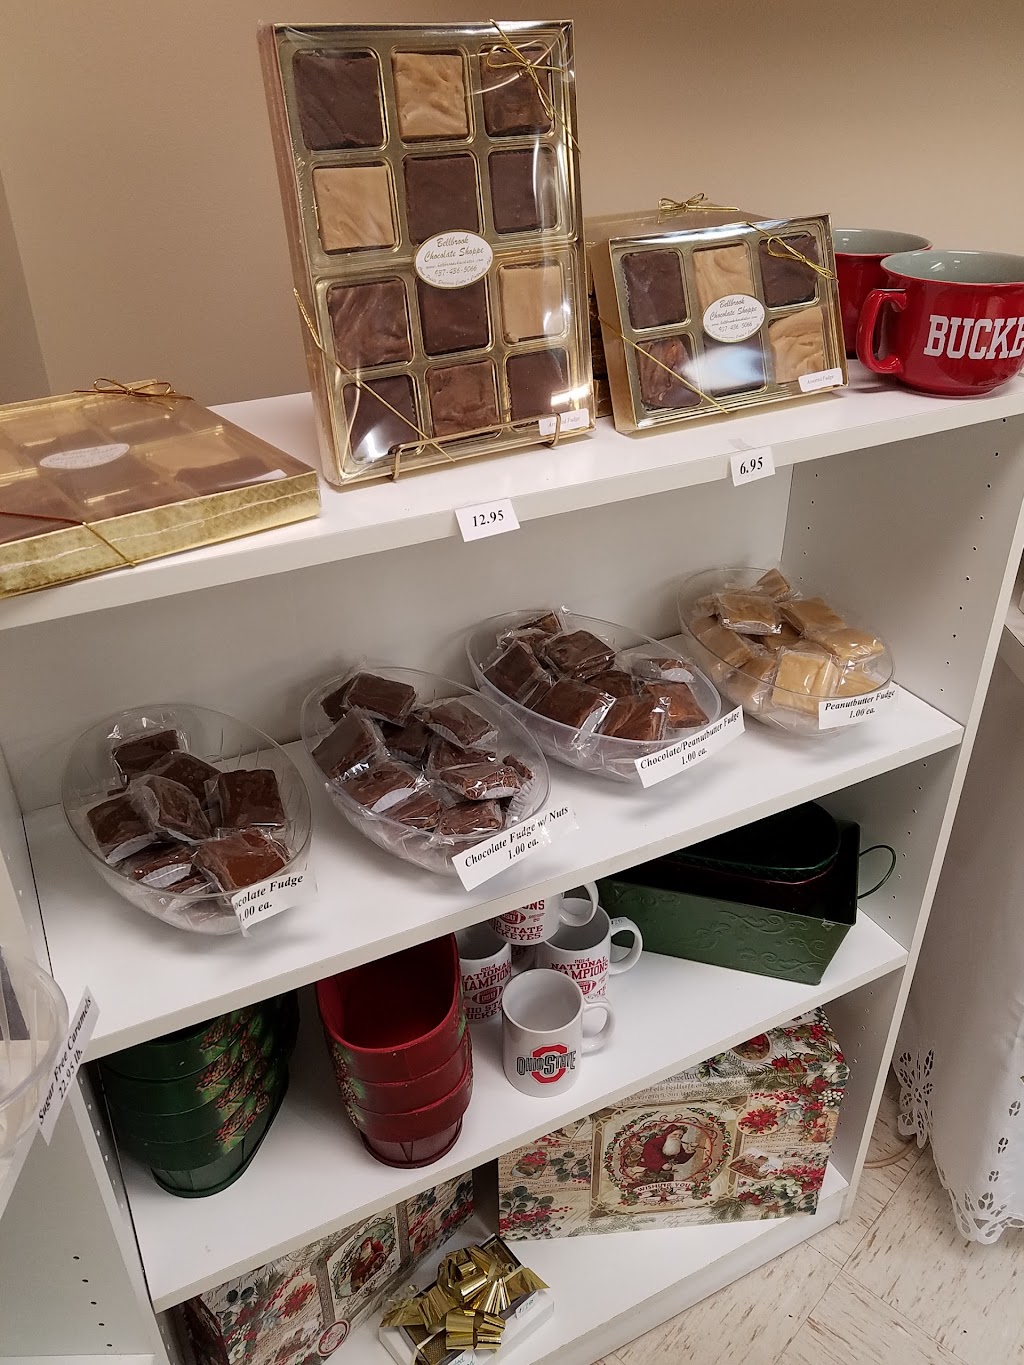 Bellbrook Chocolate Shoppe | 101 E Alex Bell Rd, Centerville, OH 45459, USA | Phone: (937) 436-5066